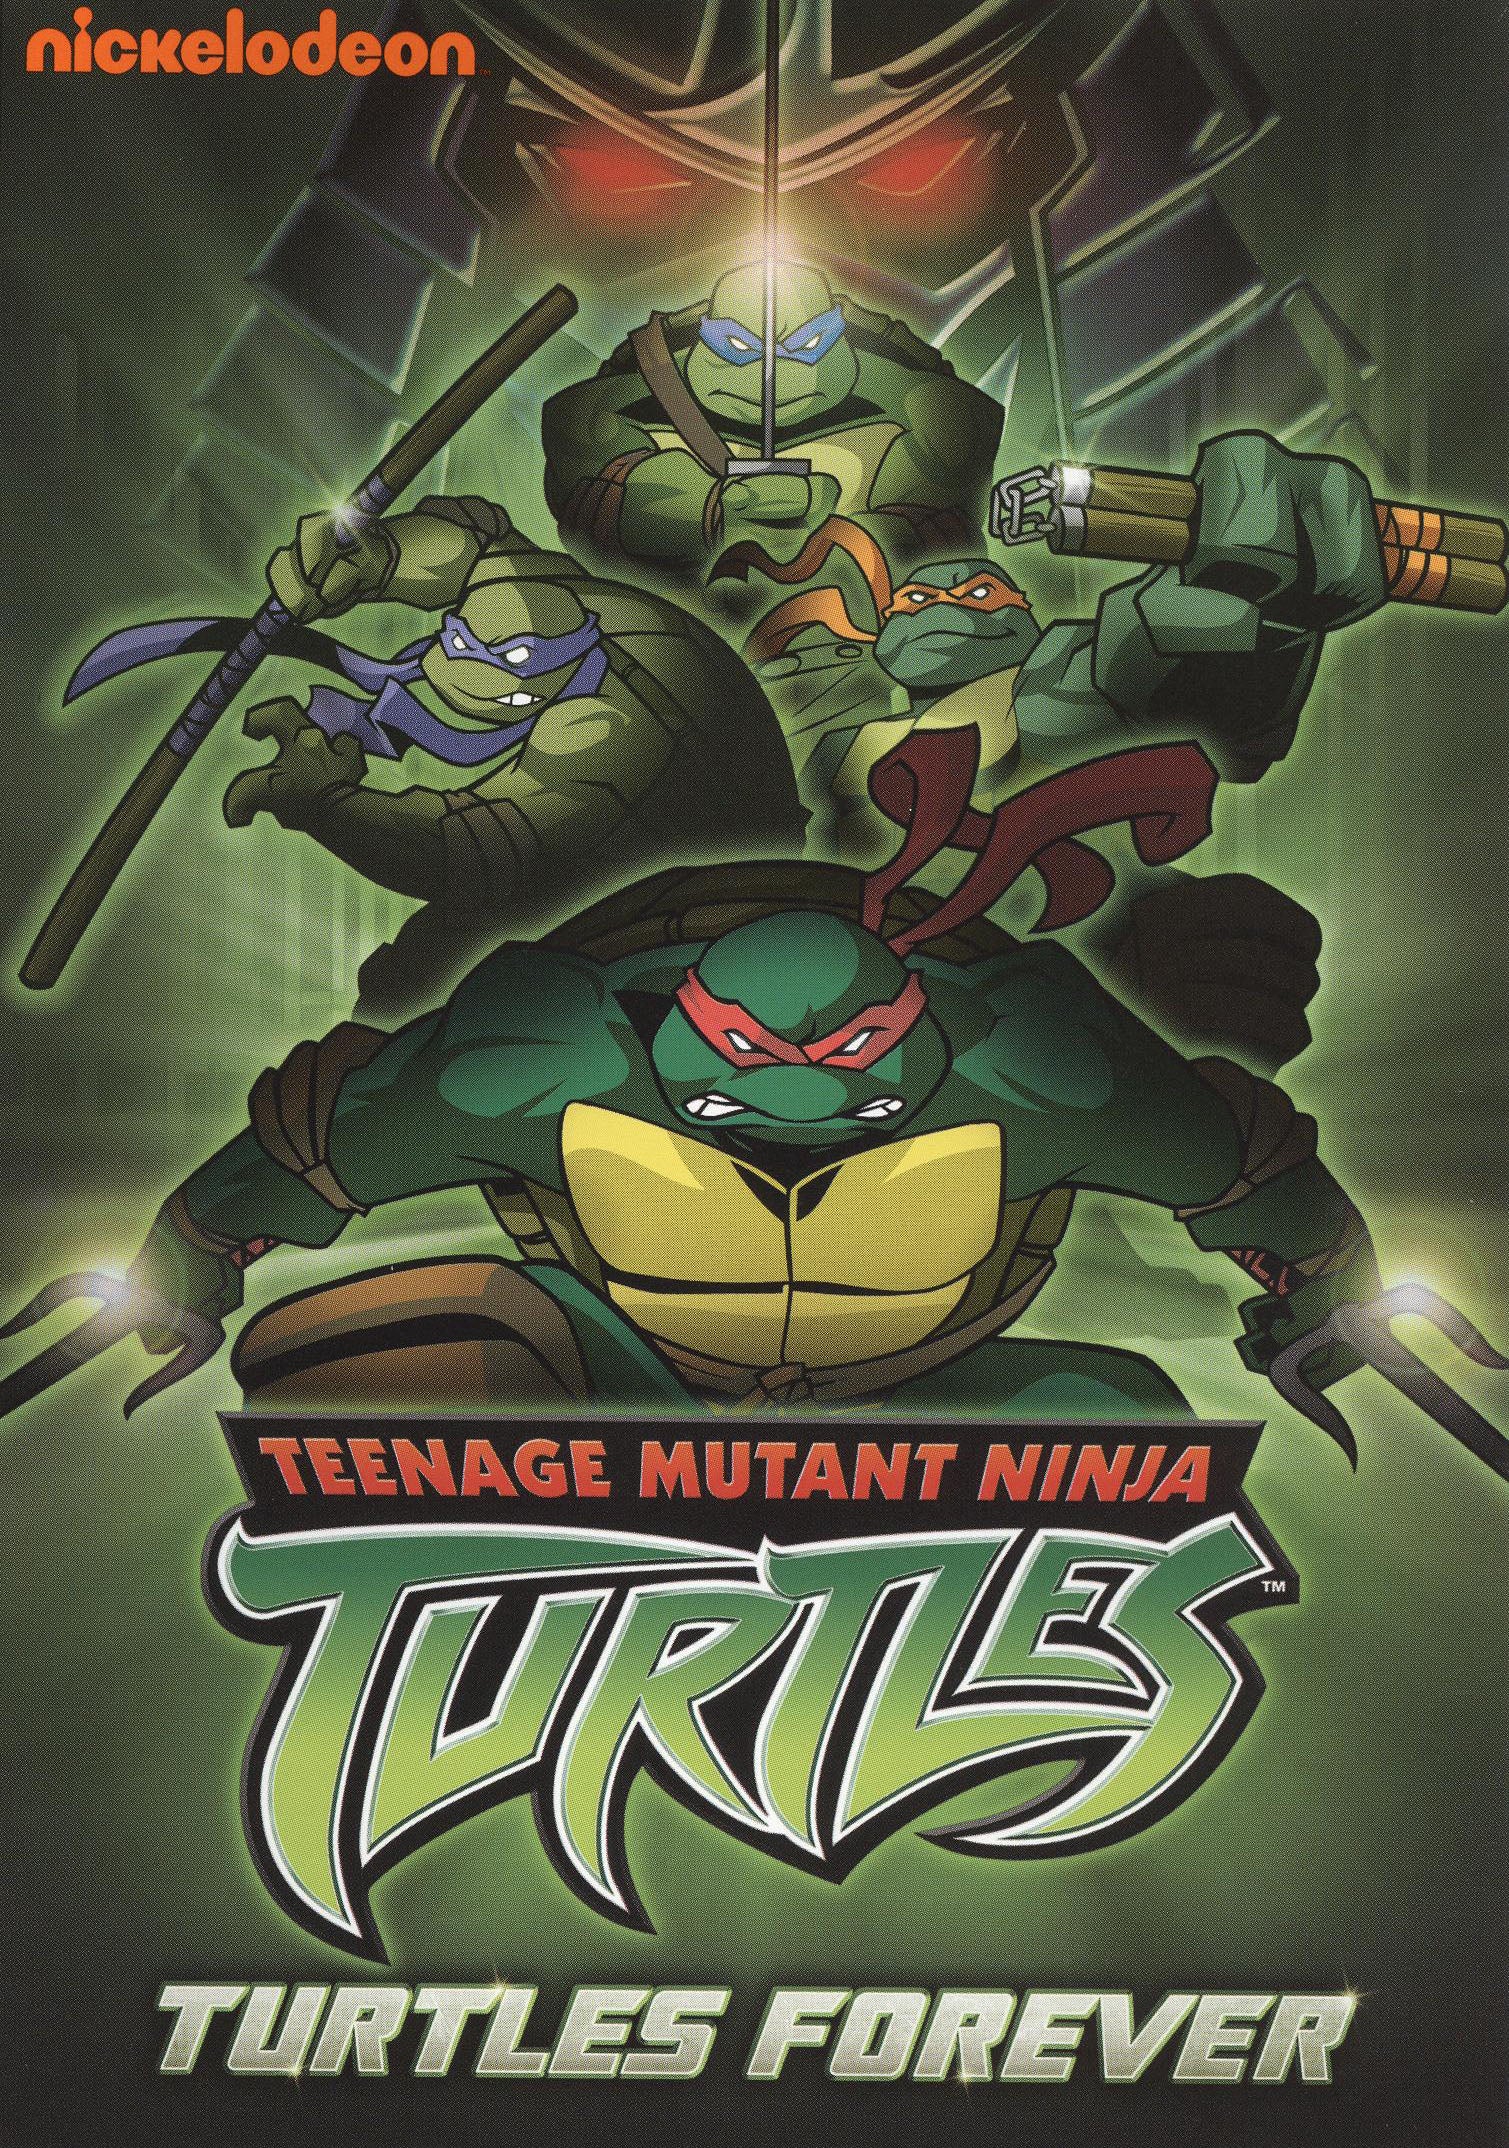 Teenage Mutant Ninja Turtles: Turtles Forever cover art